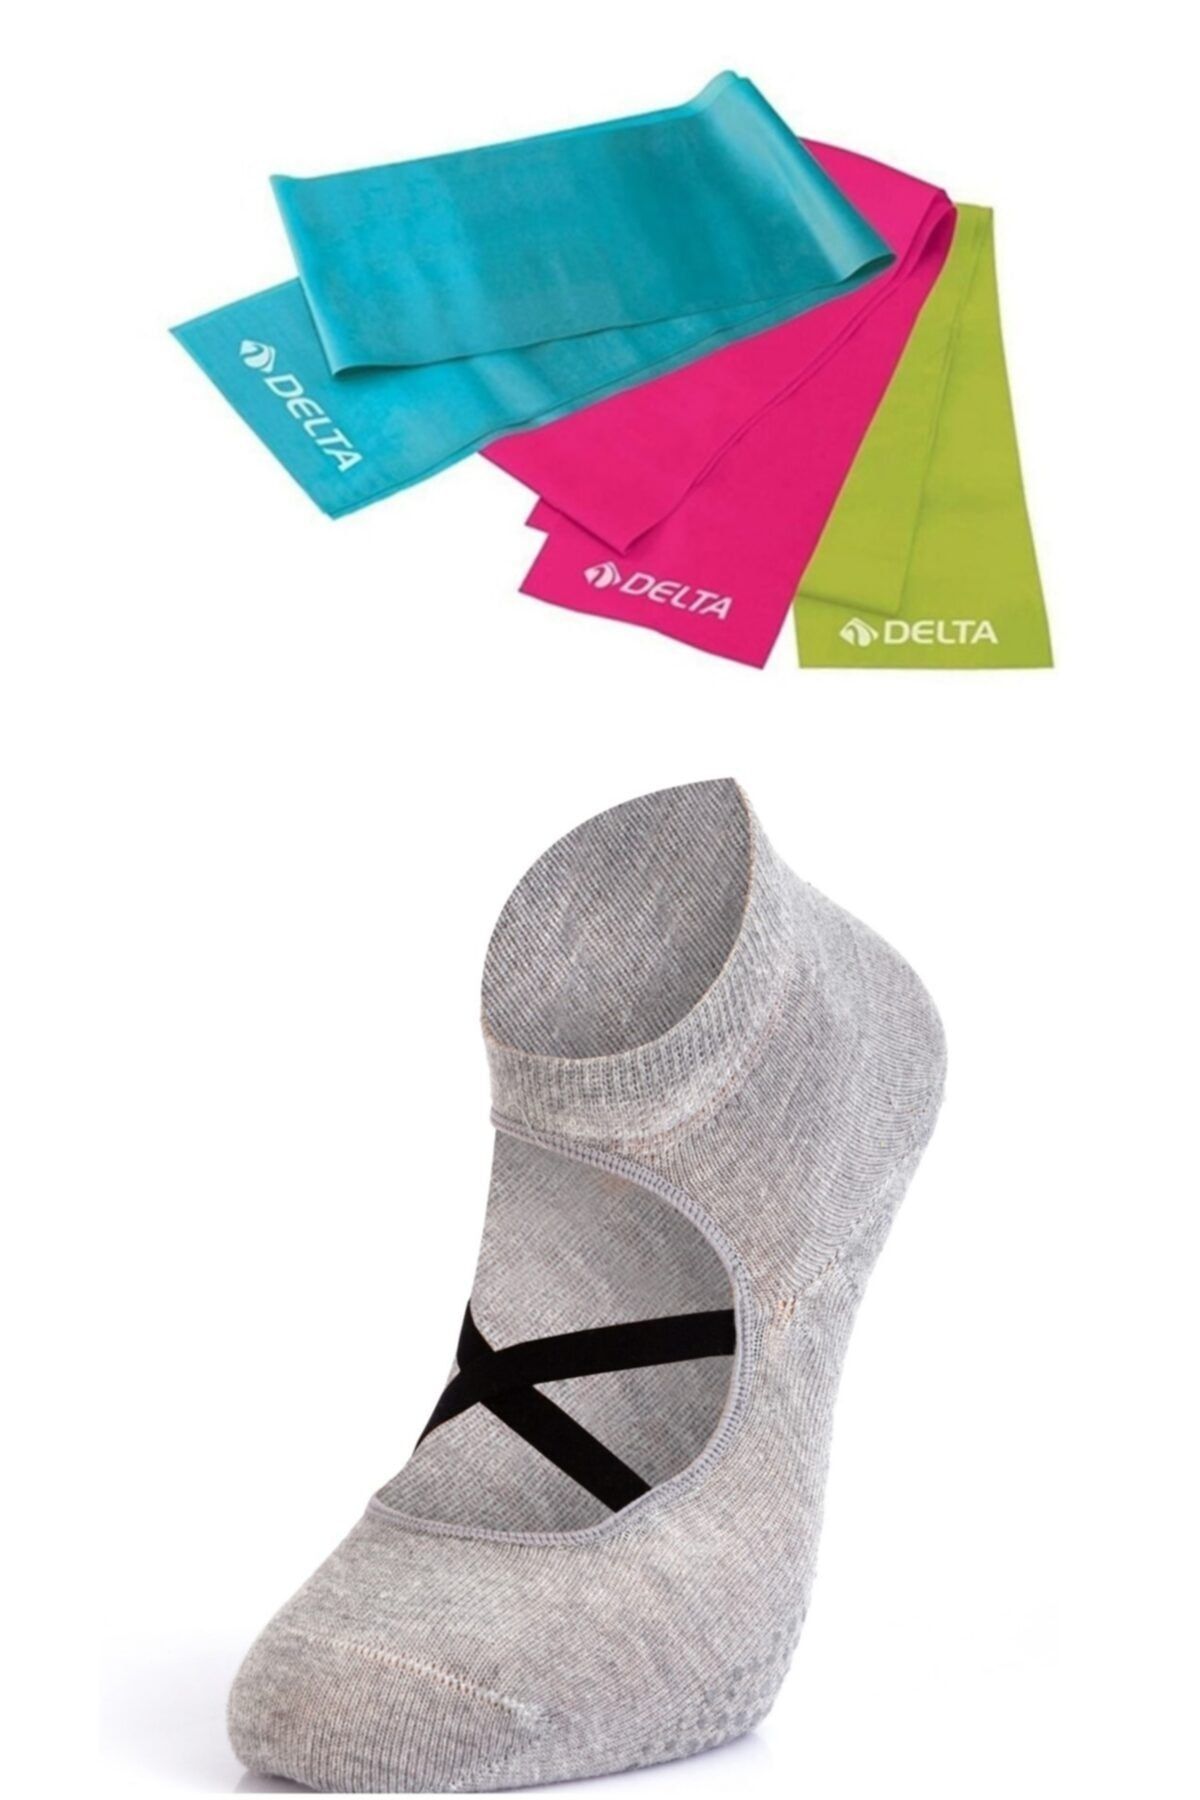 MURR 3'lü Delta Pilates Bandı Egzersiz Direnç Lastiği Ve Kaydırmaz Pilates Çorabı